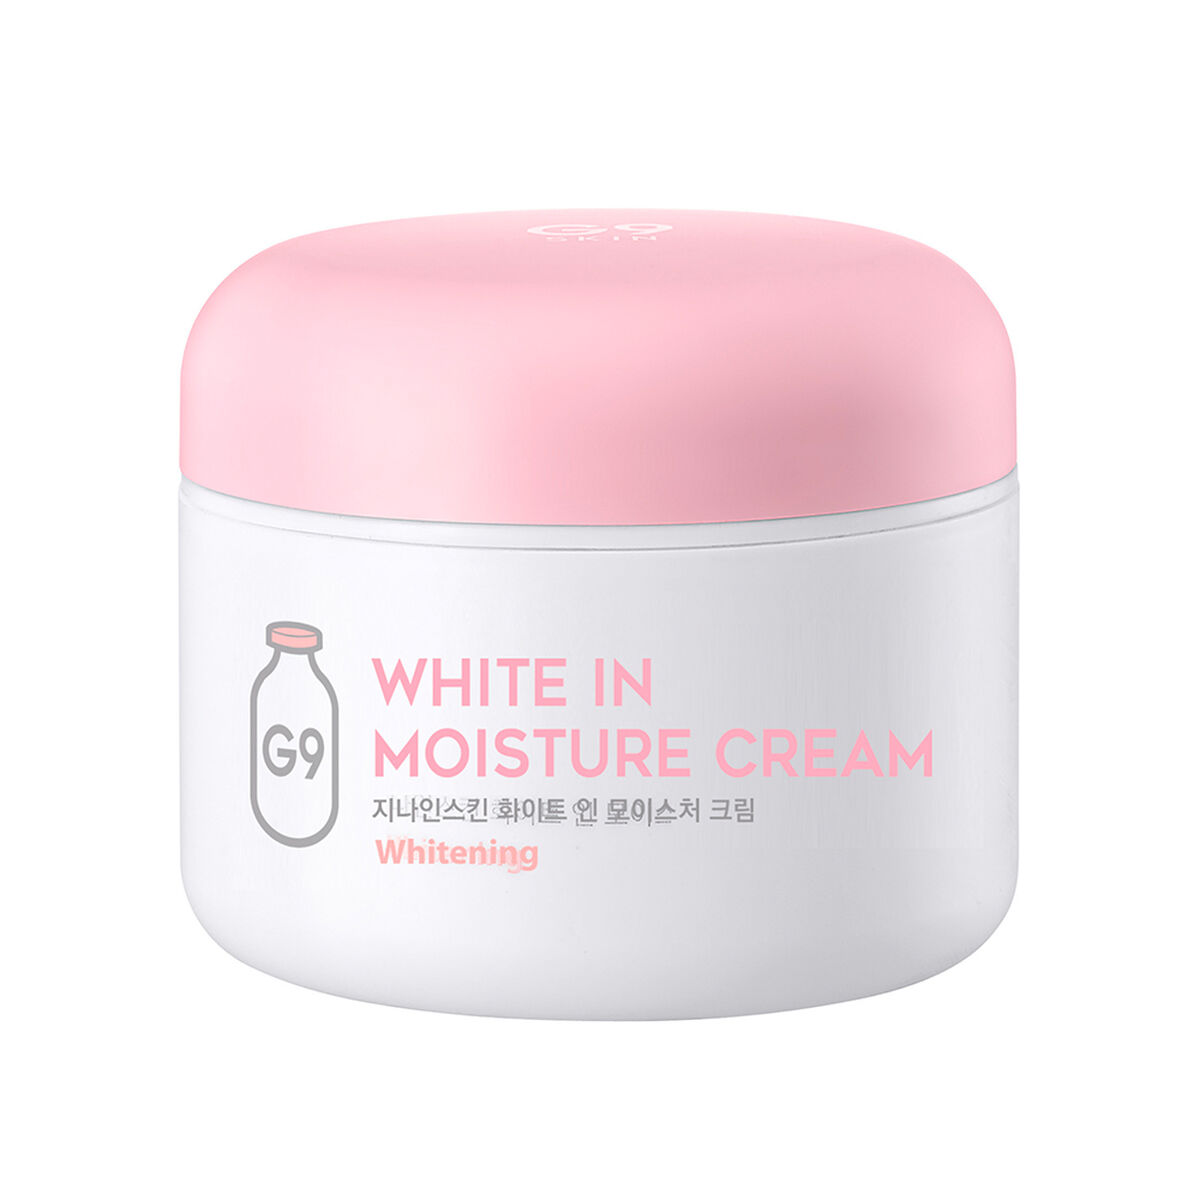 Crema Hidratante White In Moisture Cream G9Skin